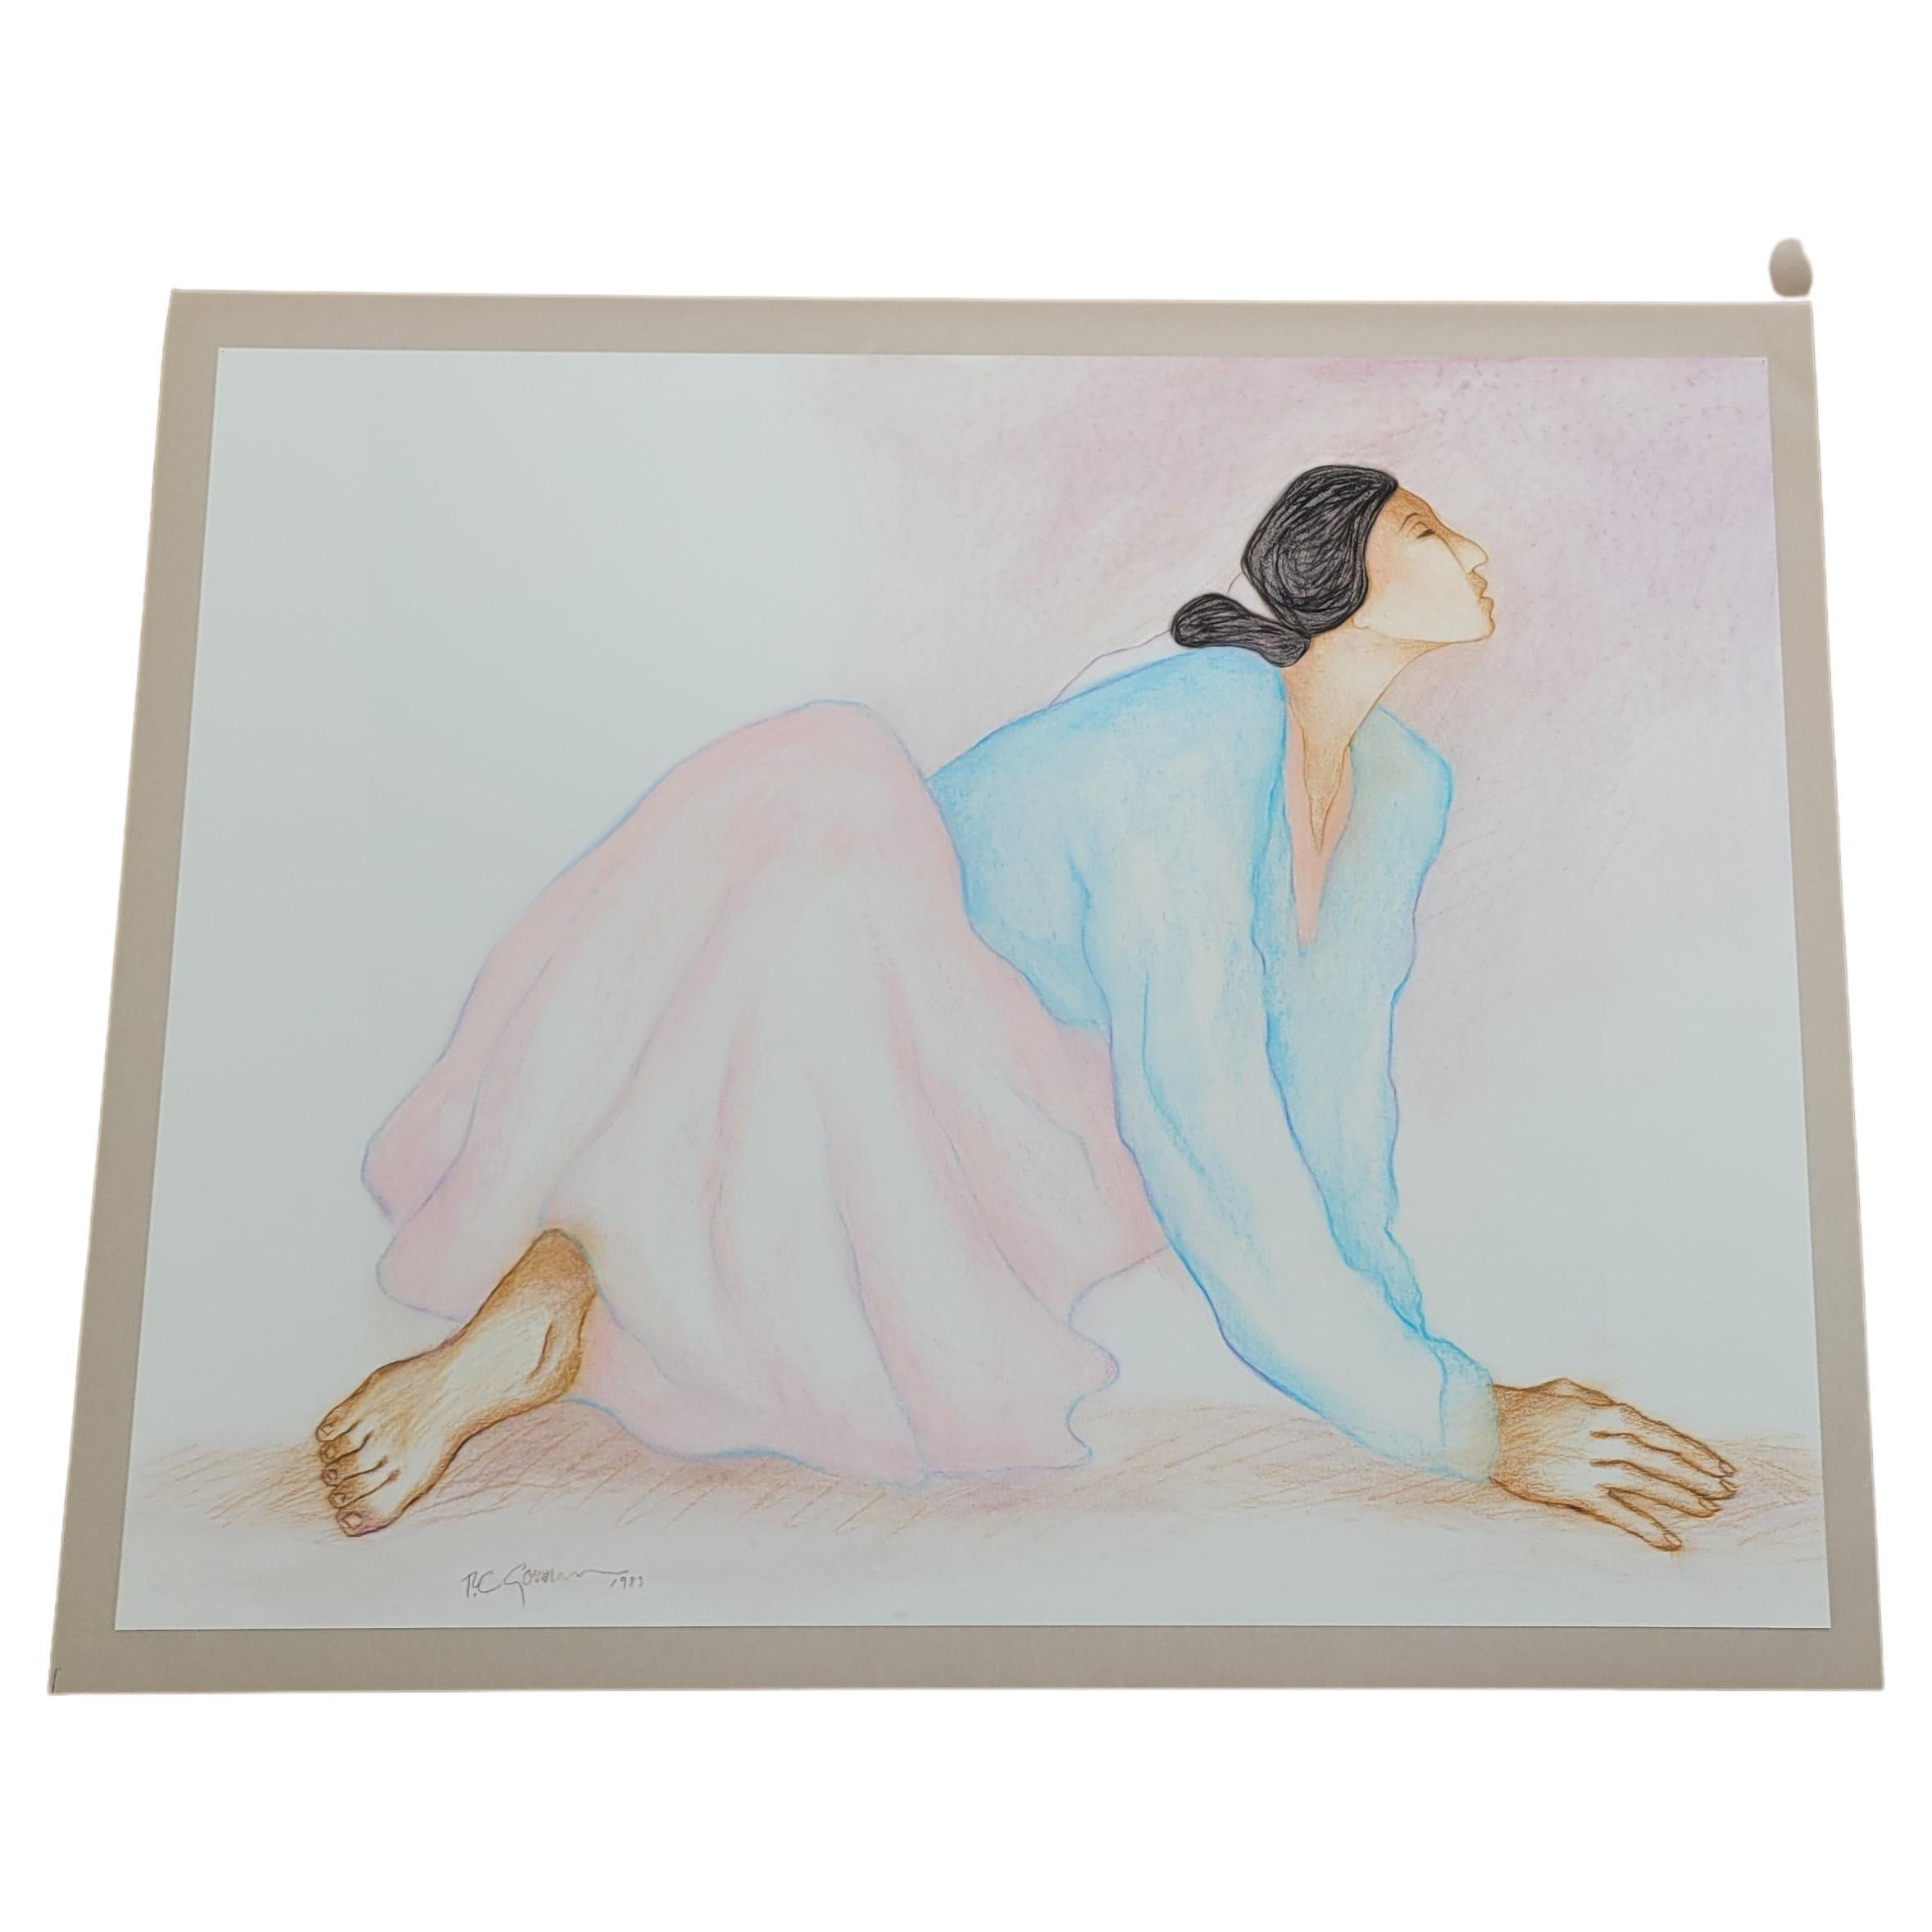 Frau mit rosa Rock und hellblauer Bluse - 1983

Dies ist ein Original-Pastell von R.C. Gorman.  Dieses Werk ist ungerahmt und in der Original-Schutzhülle.

Die Maße sind Höhe 23 Zoll, Breite 29 Zoll.  Die Tiefe kann nicht angegeben werden, da das